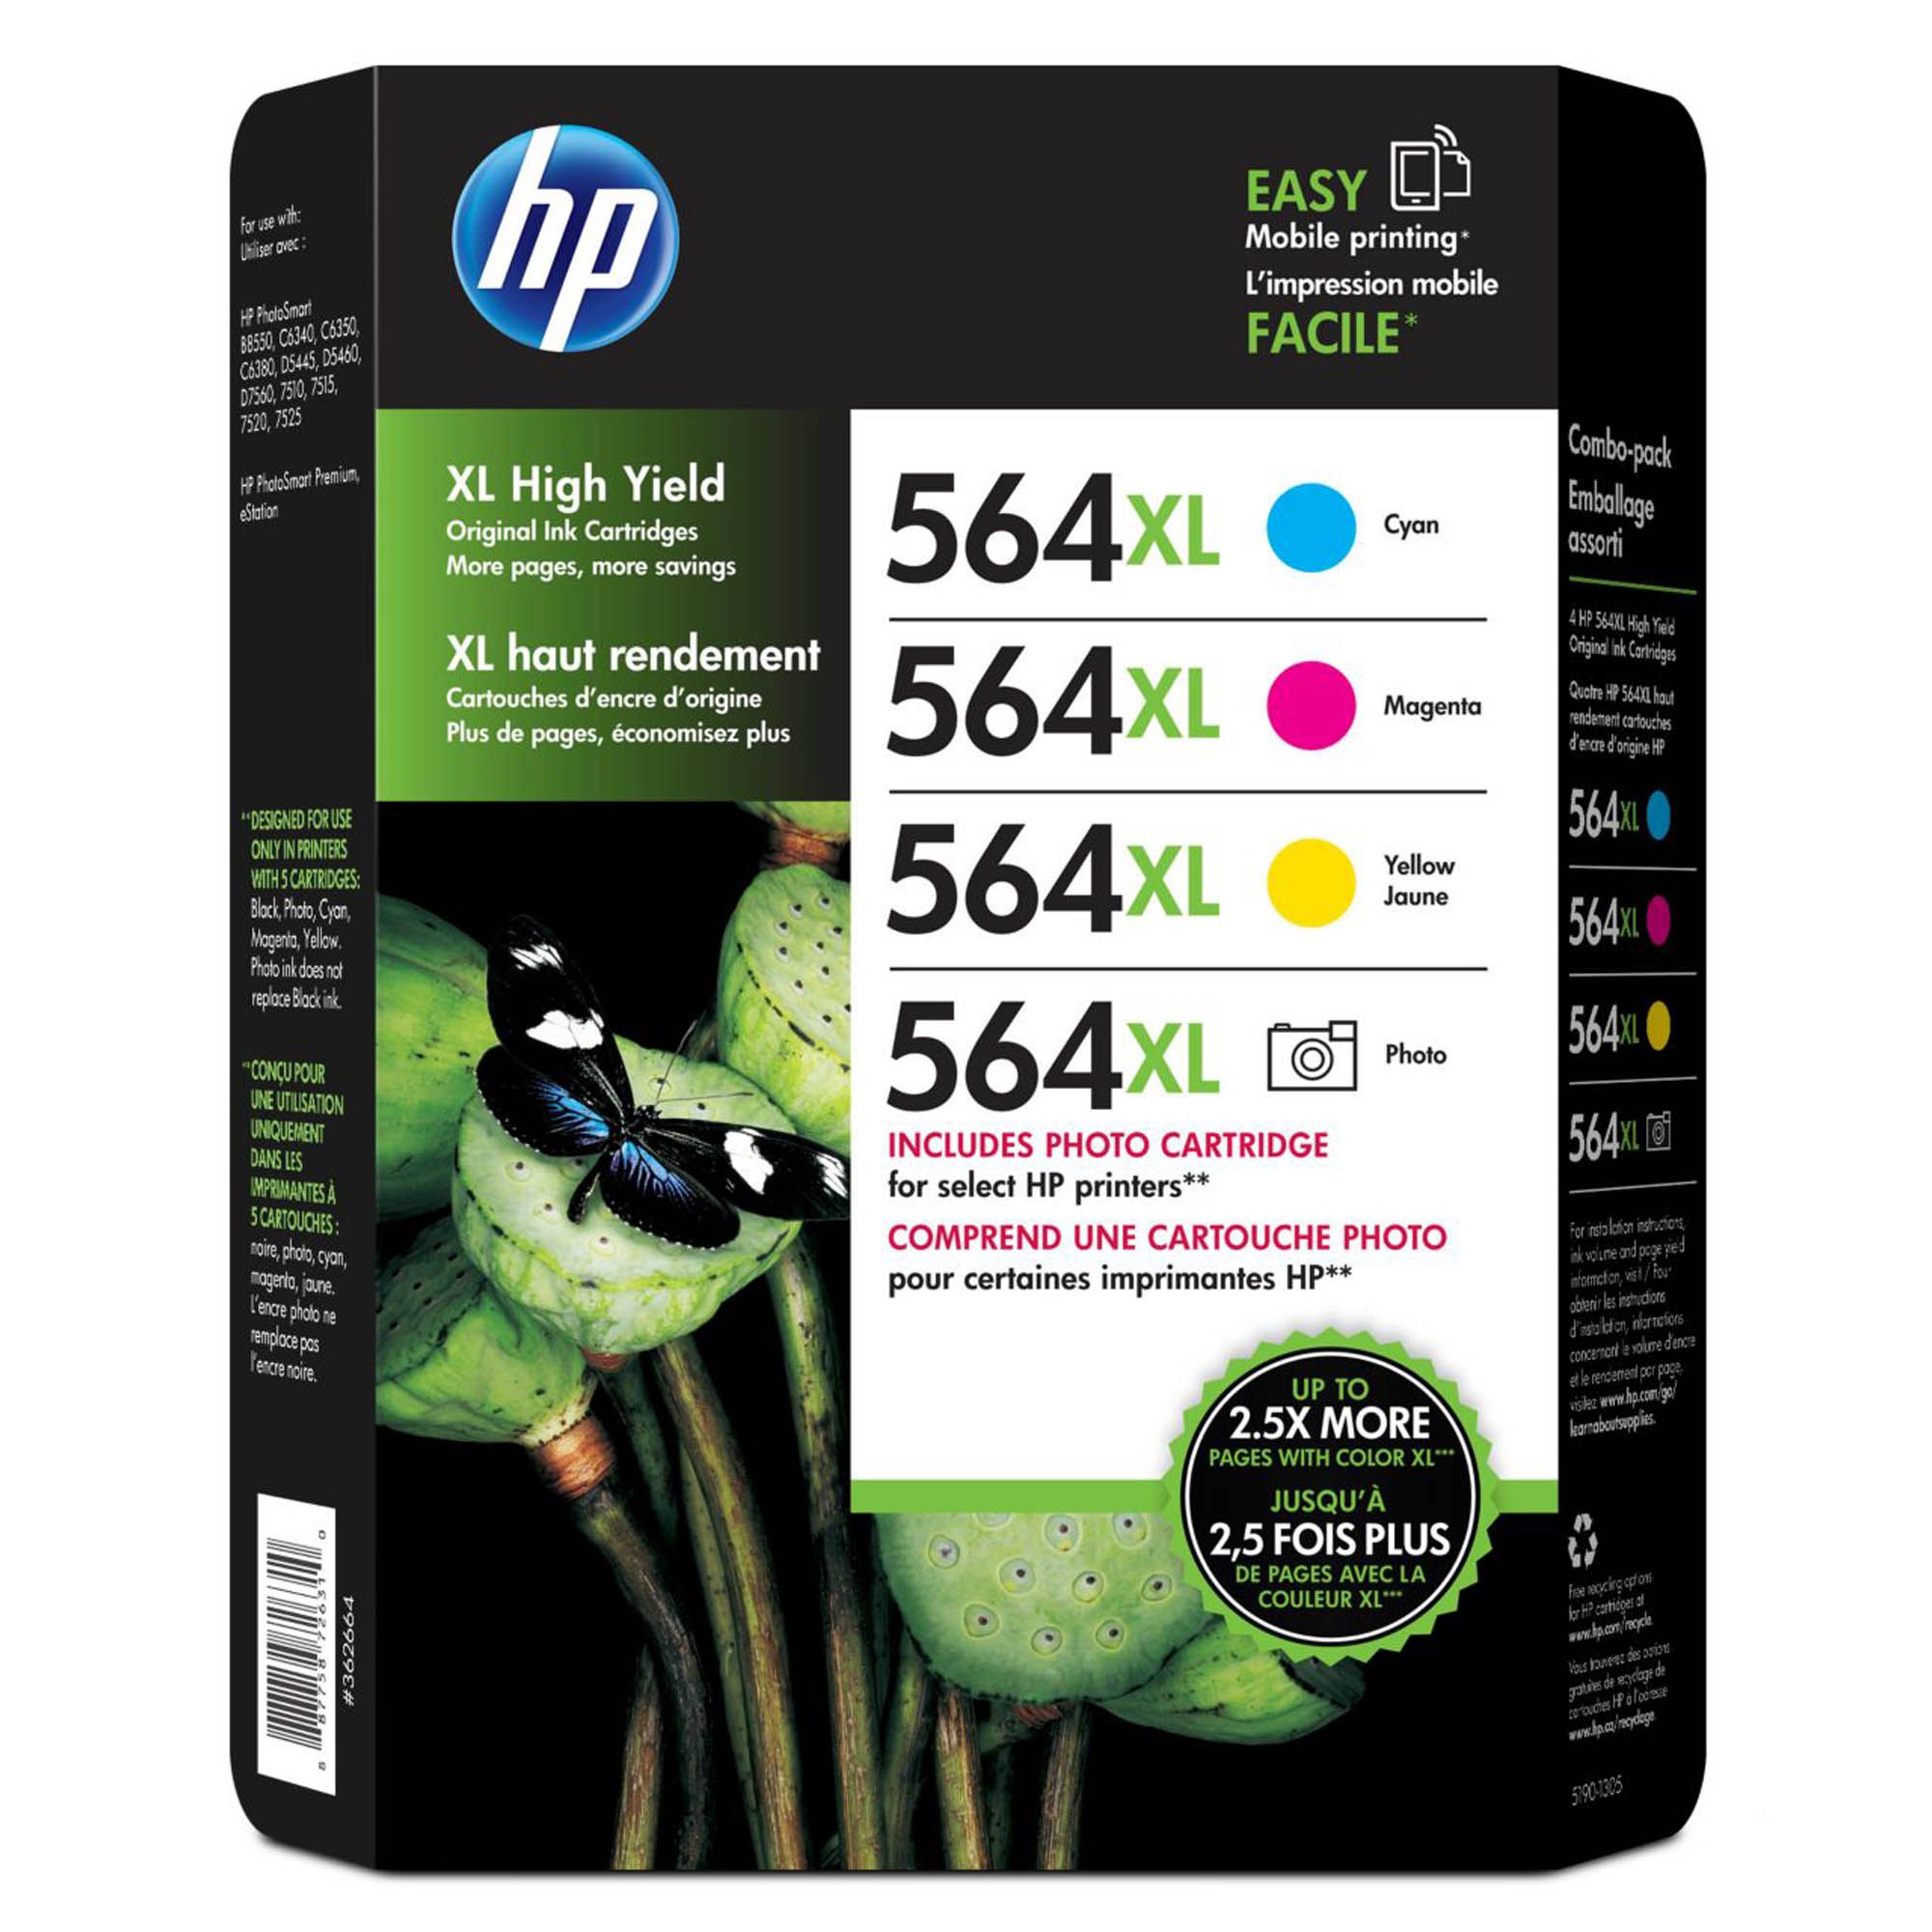 HP Inc. 564XL Color/Photo Ink Cartridges, 4 pk.